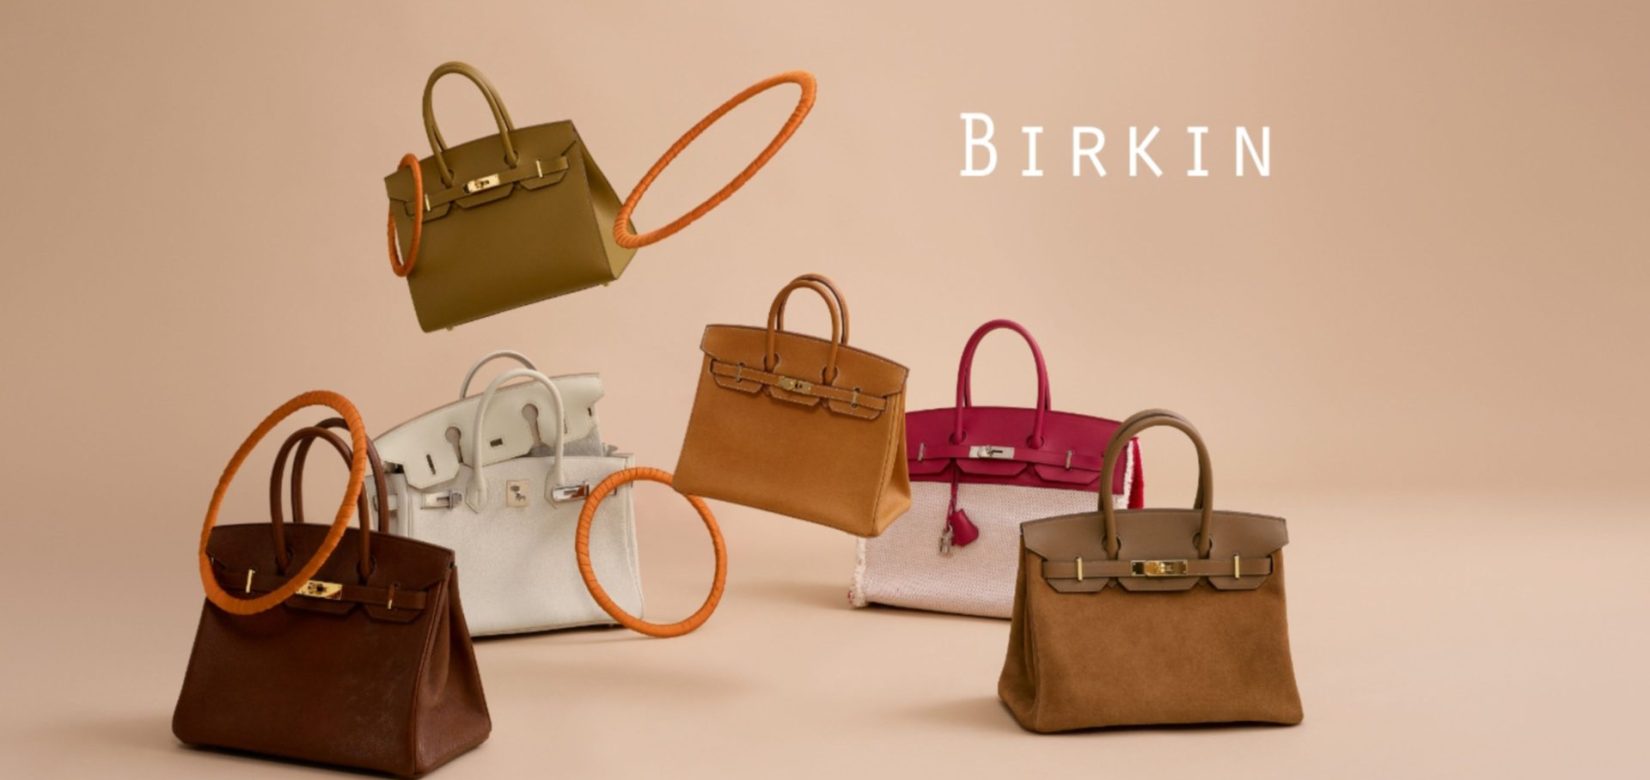 Ο οίκος Hermès δεν πουλά τις μυθικές τσάντες Birkin σε όλους - Μήνυση απο δυσαρεστημένους πελάτες